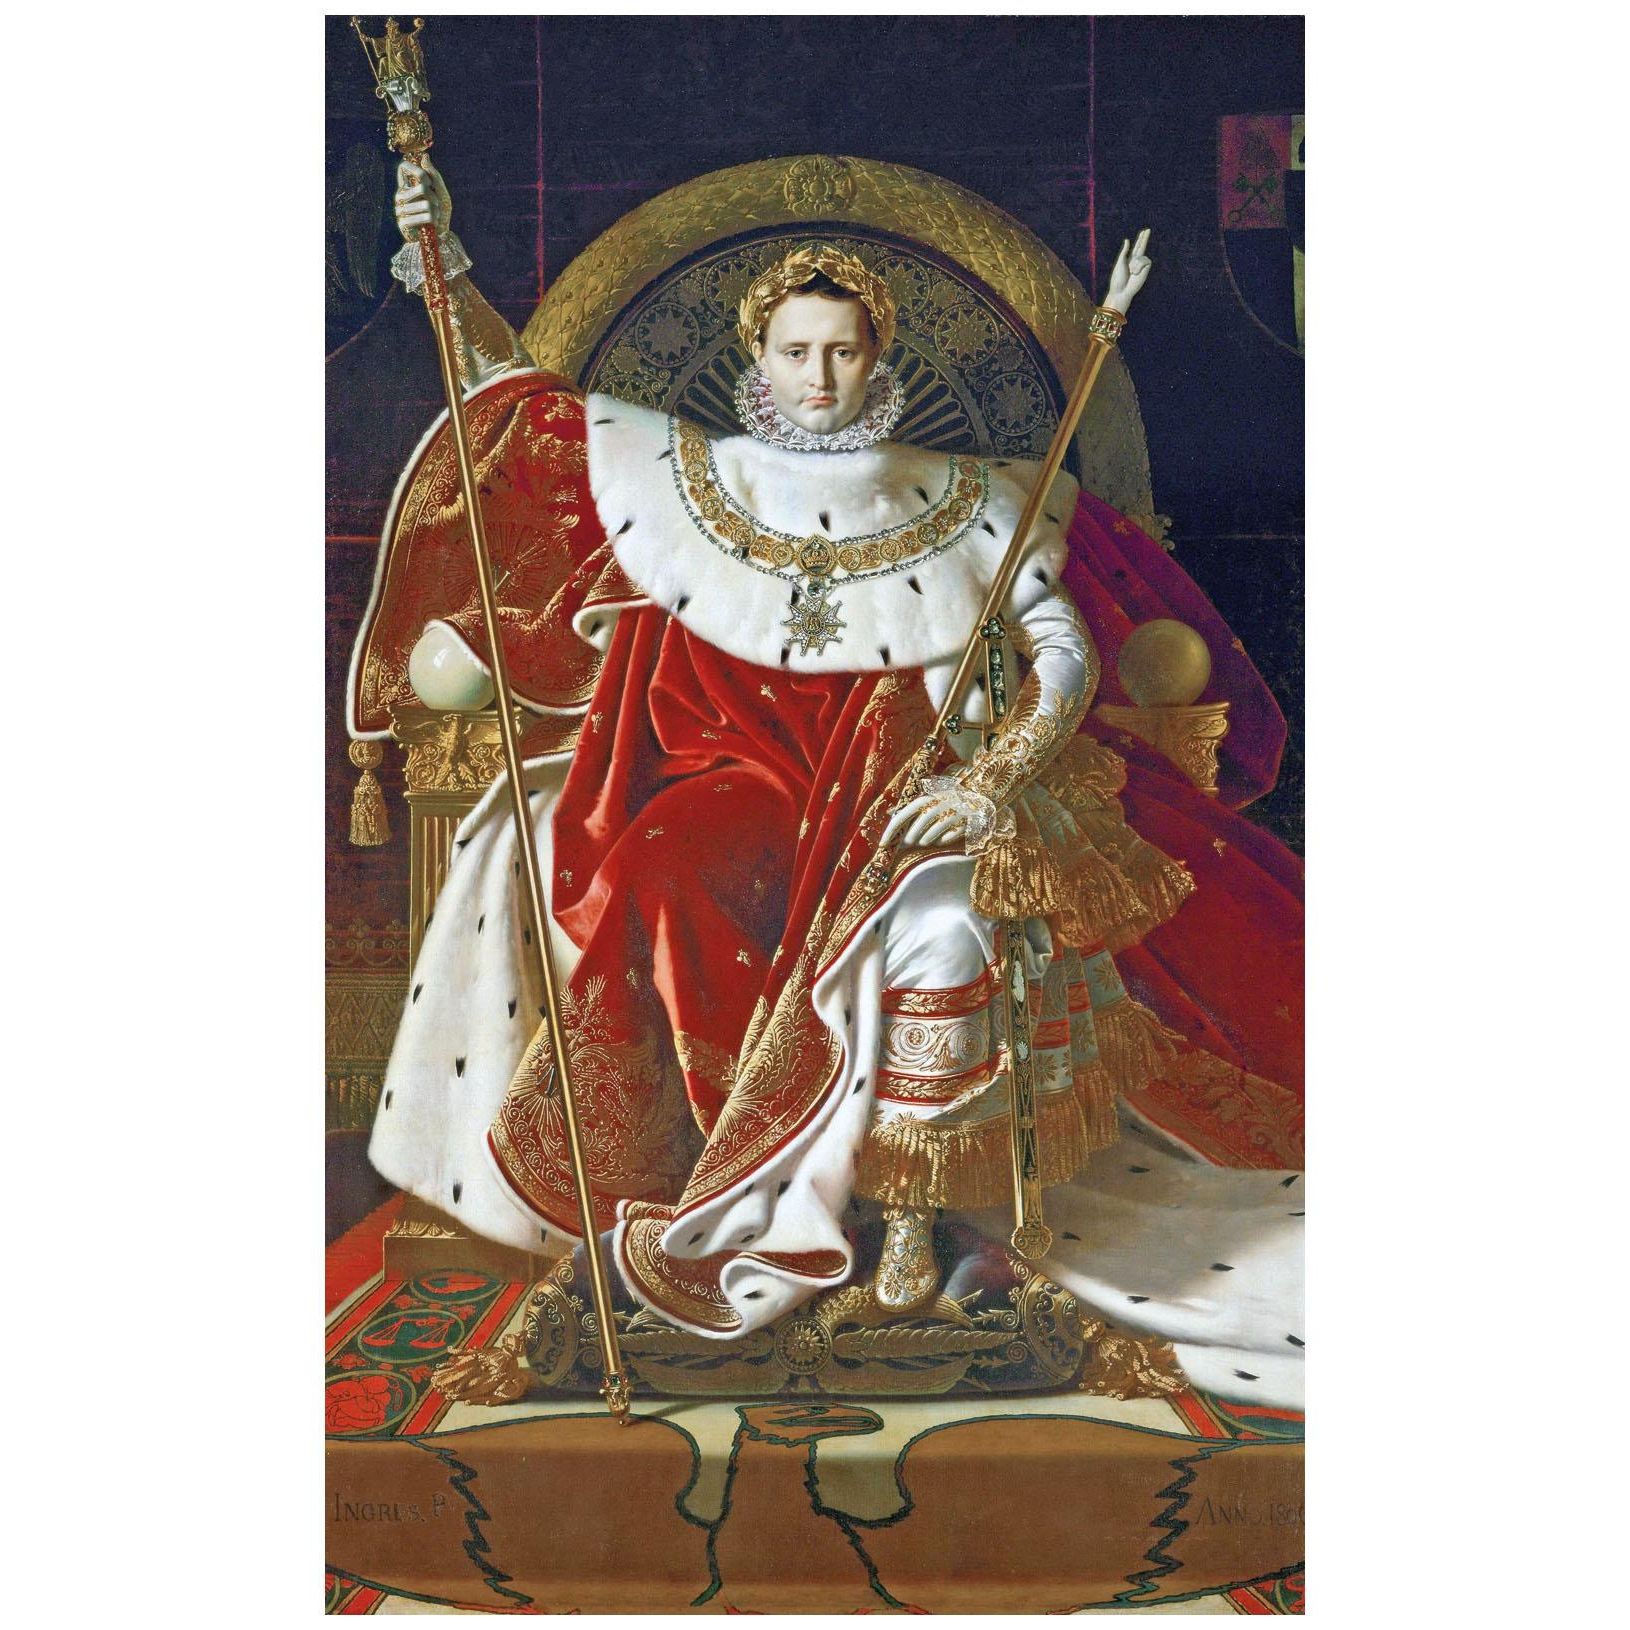 Dominique Ingres. Napoléon Ier sur le trône imperial. 1806. Musee de l’Armee Paris